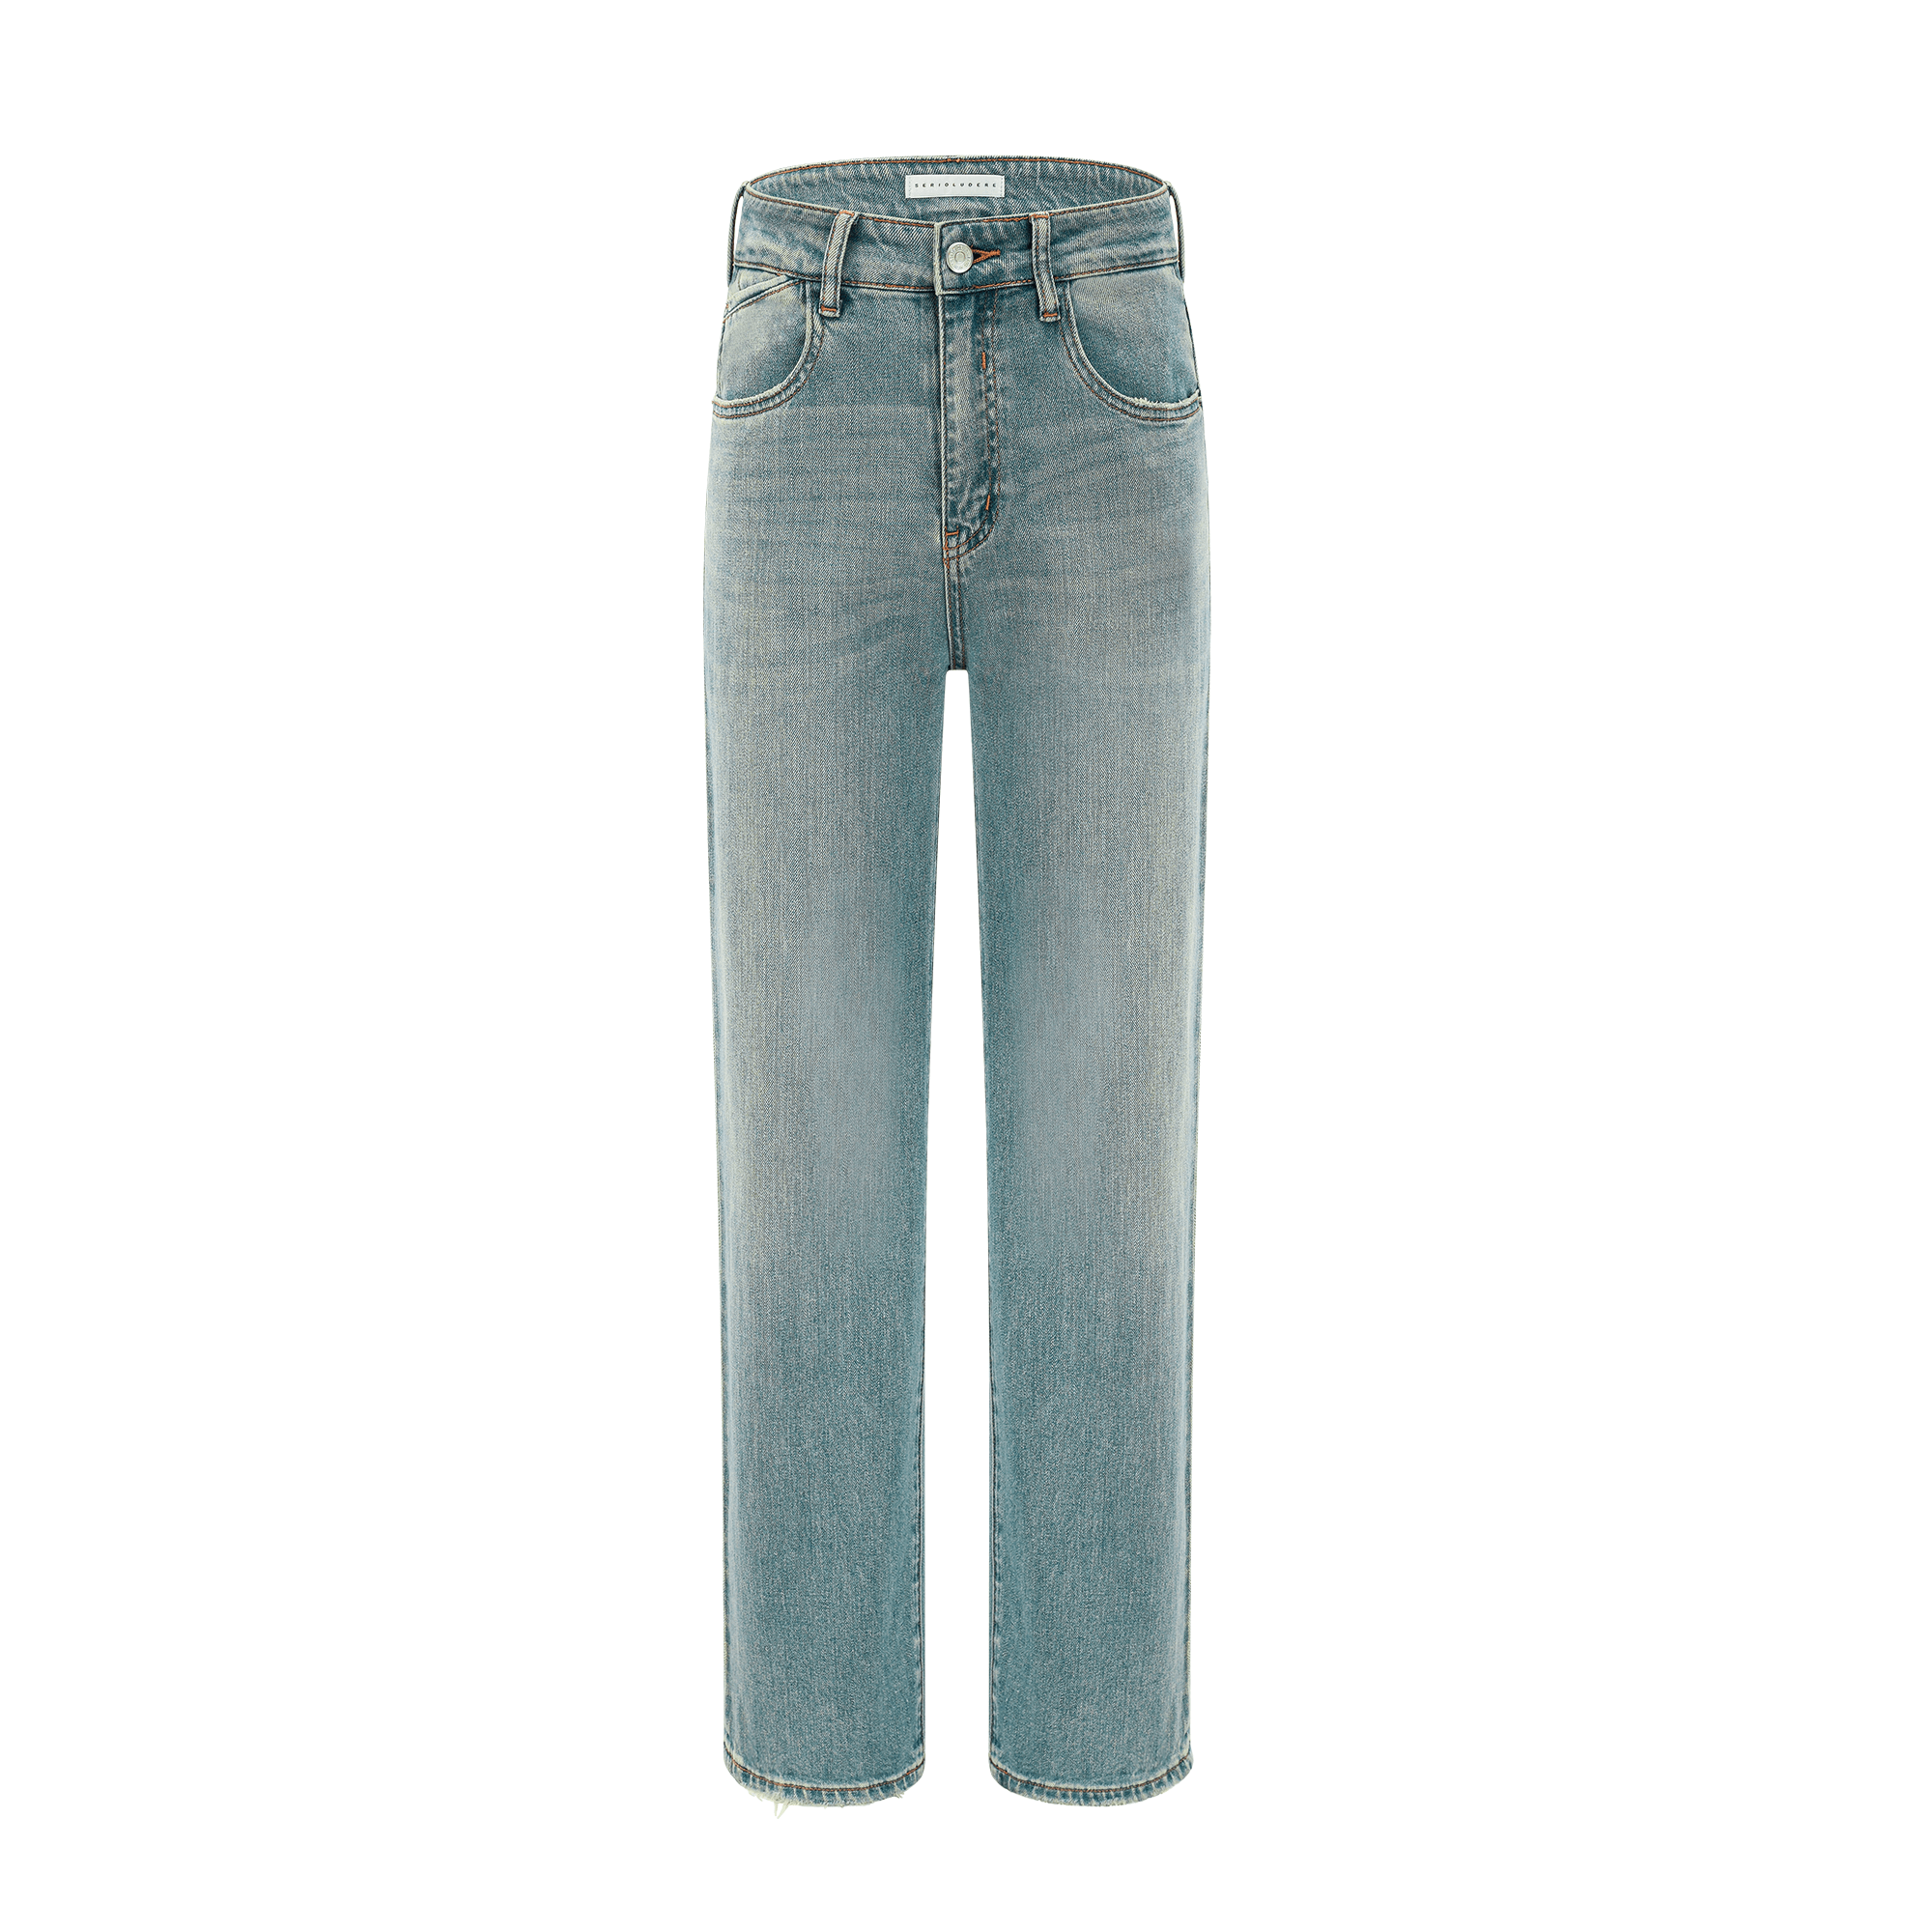 Hazel straight-leg jeans - Miss Rosier - Women's Online Boutique